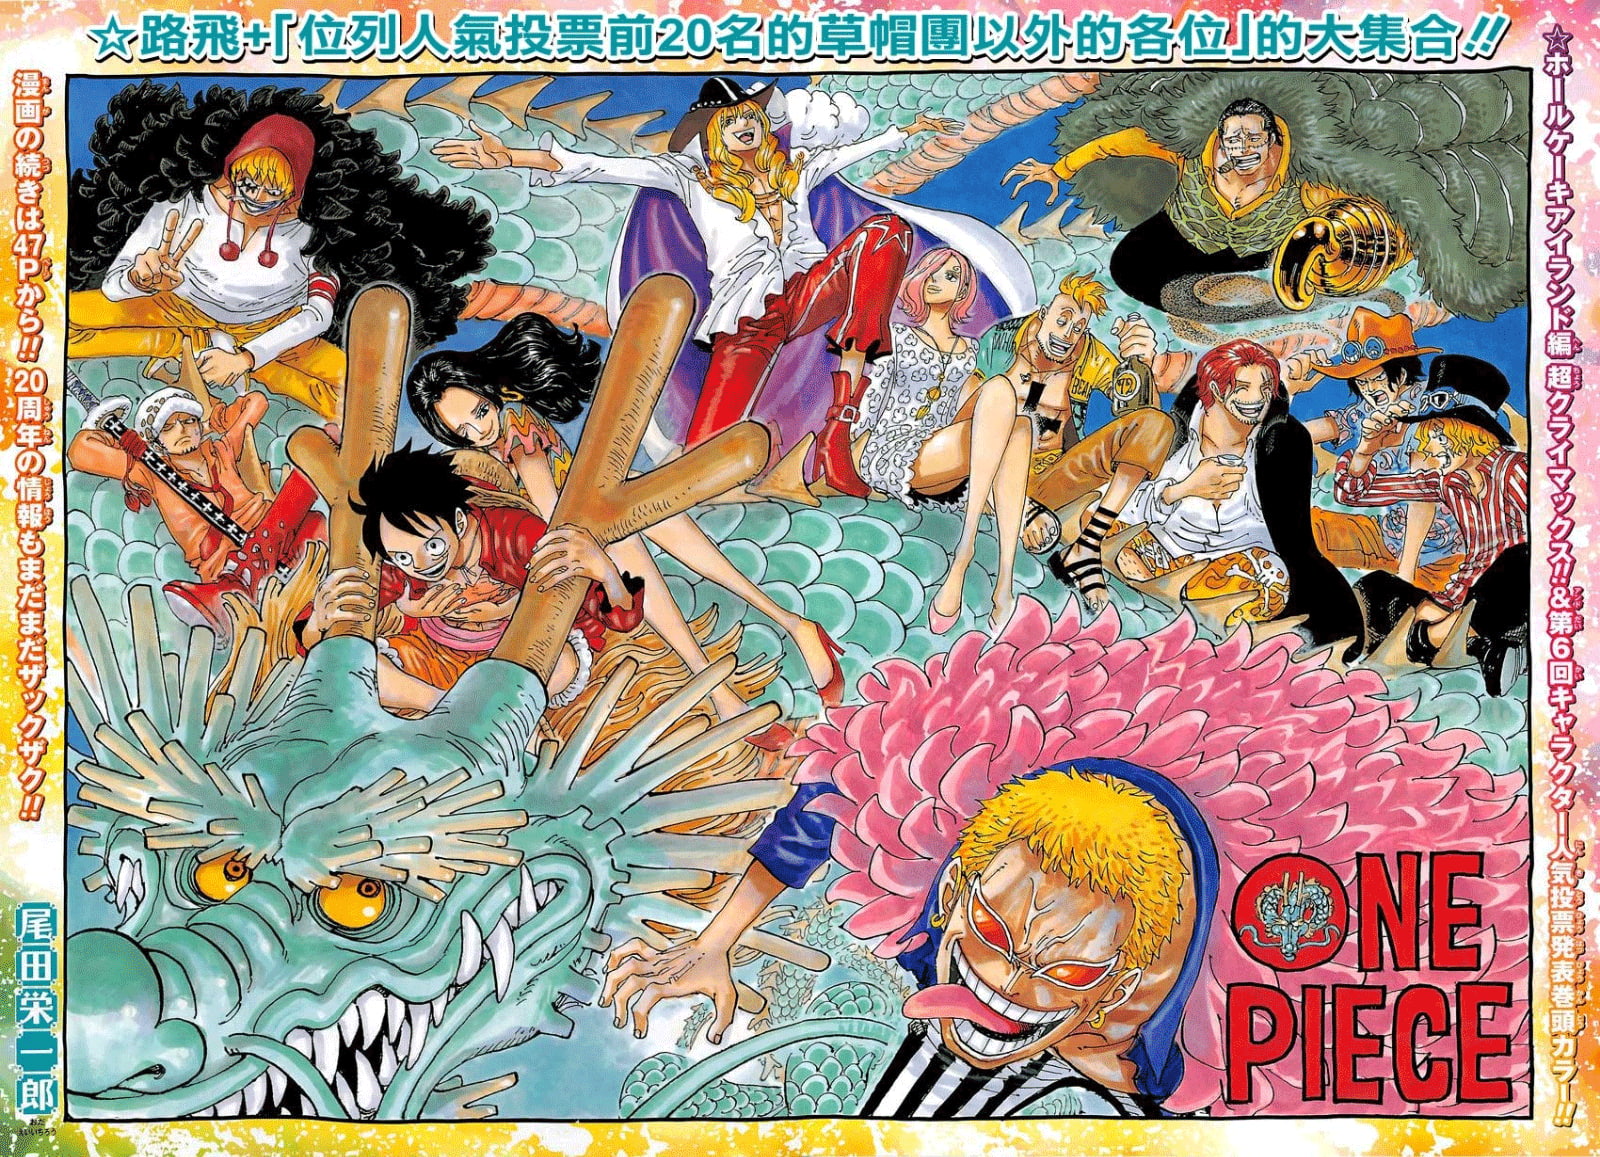 One Piece, Monkey D. Luffy, Trafalgar Law, Crocodile (character)